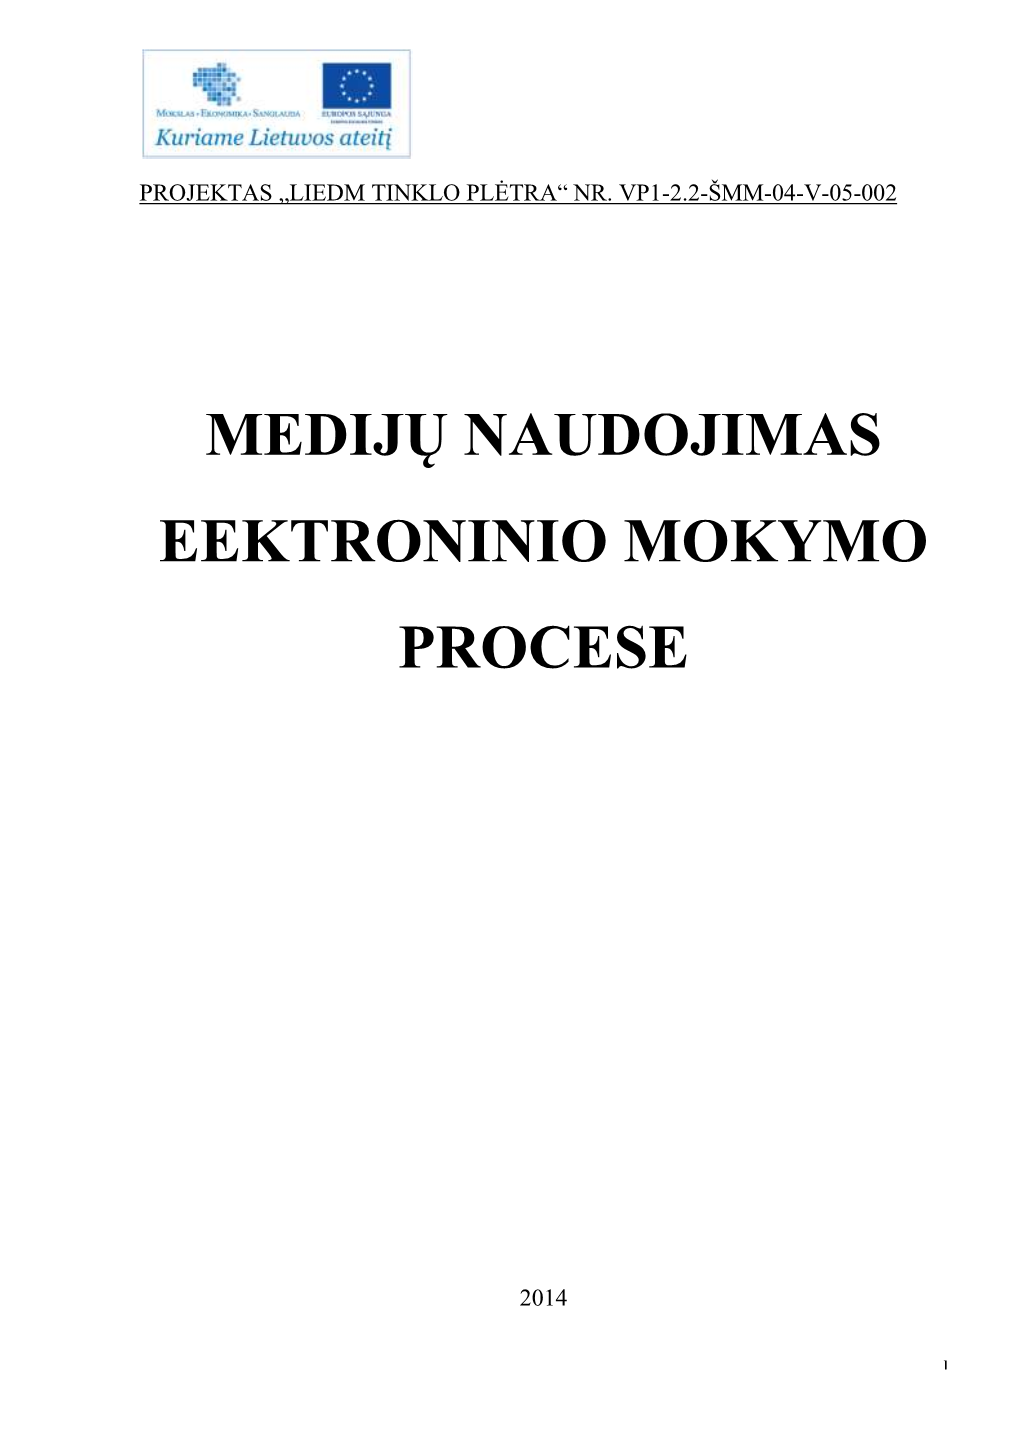 Medijų Naudojimas Eektroninio Mokymo Procese